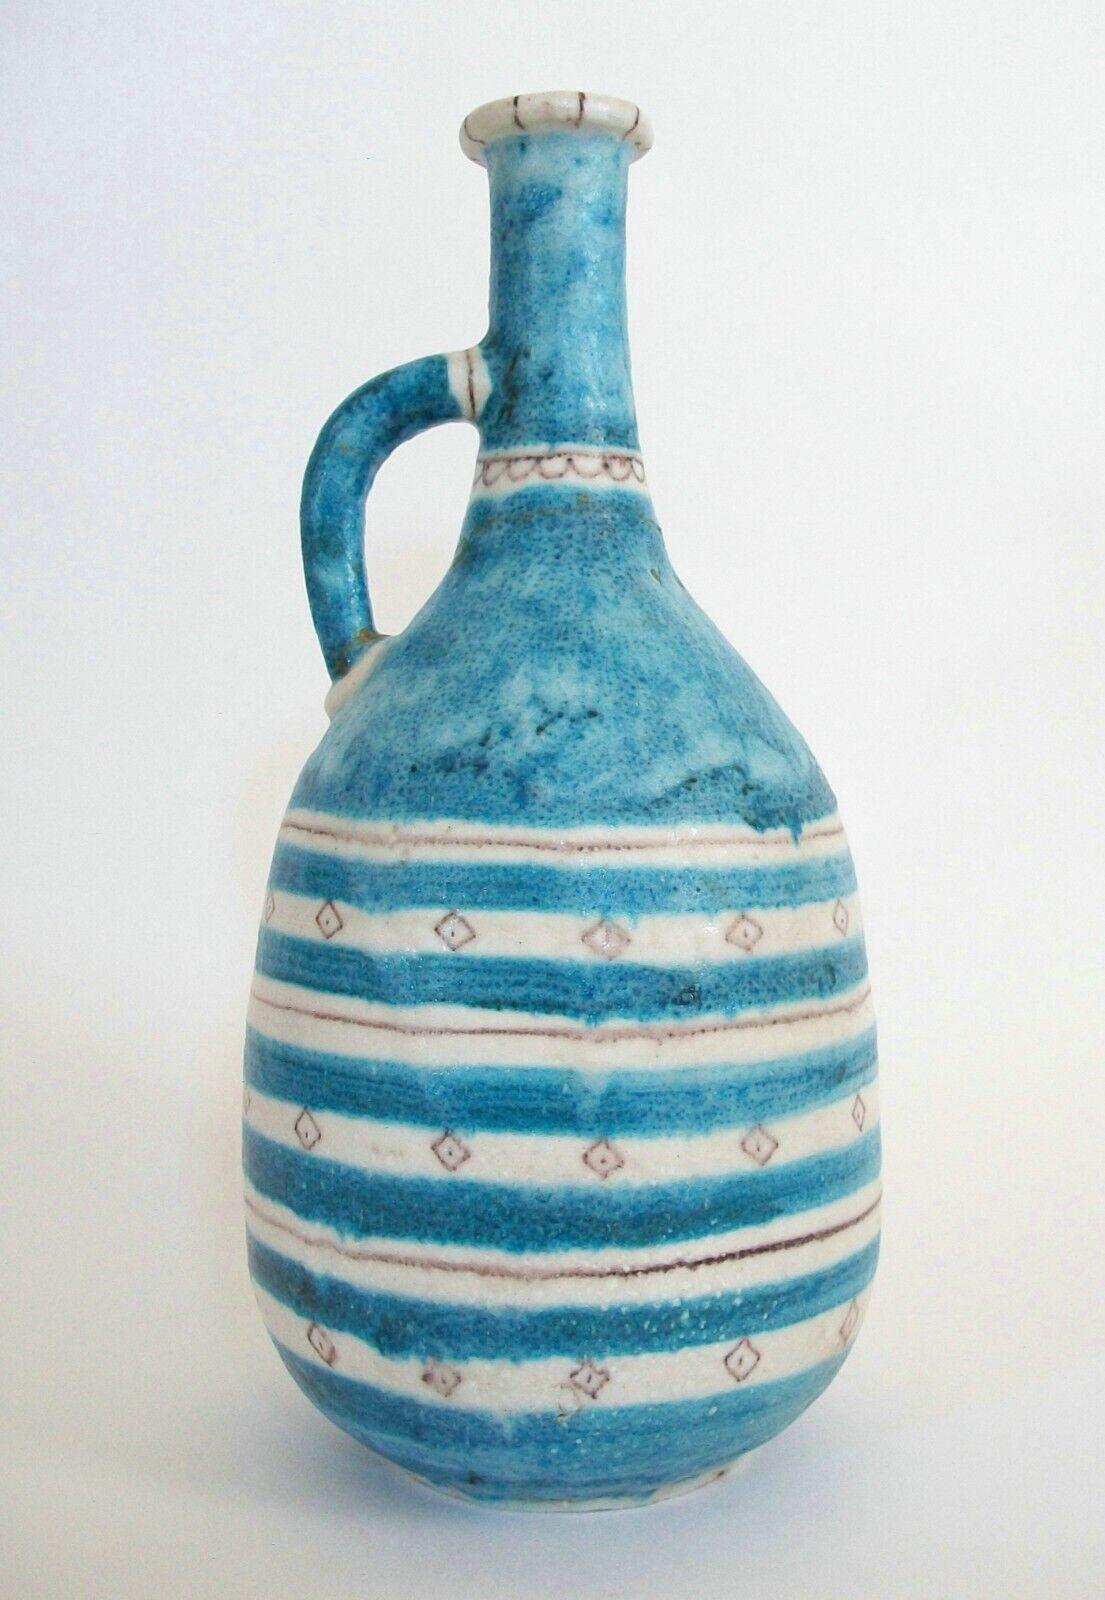 guido gambone pottery